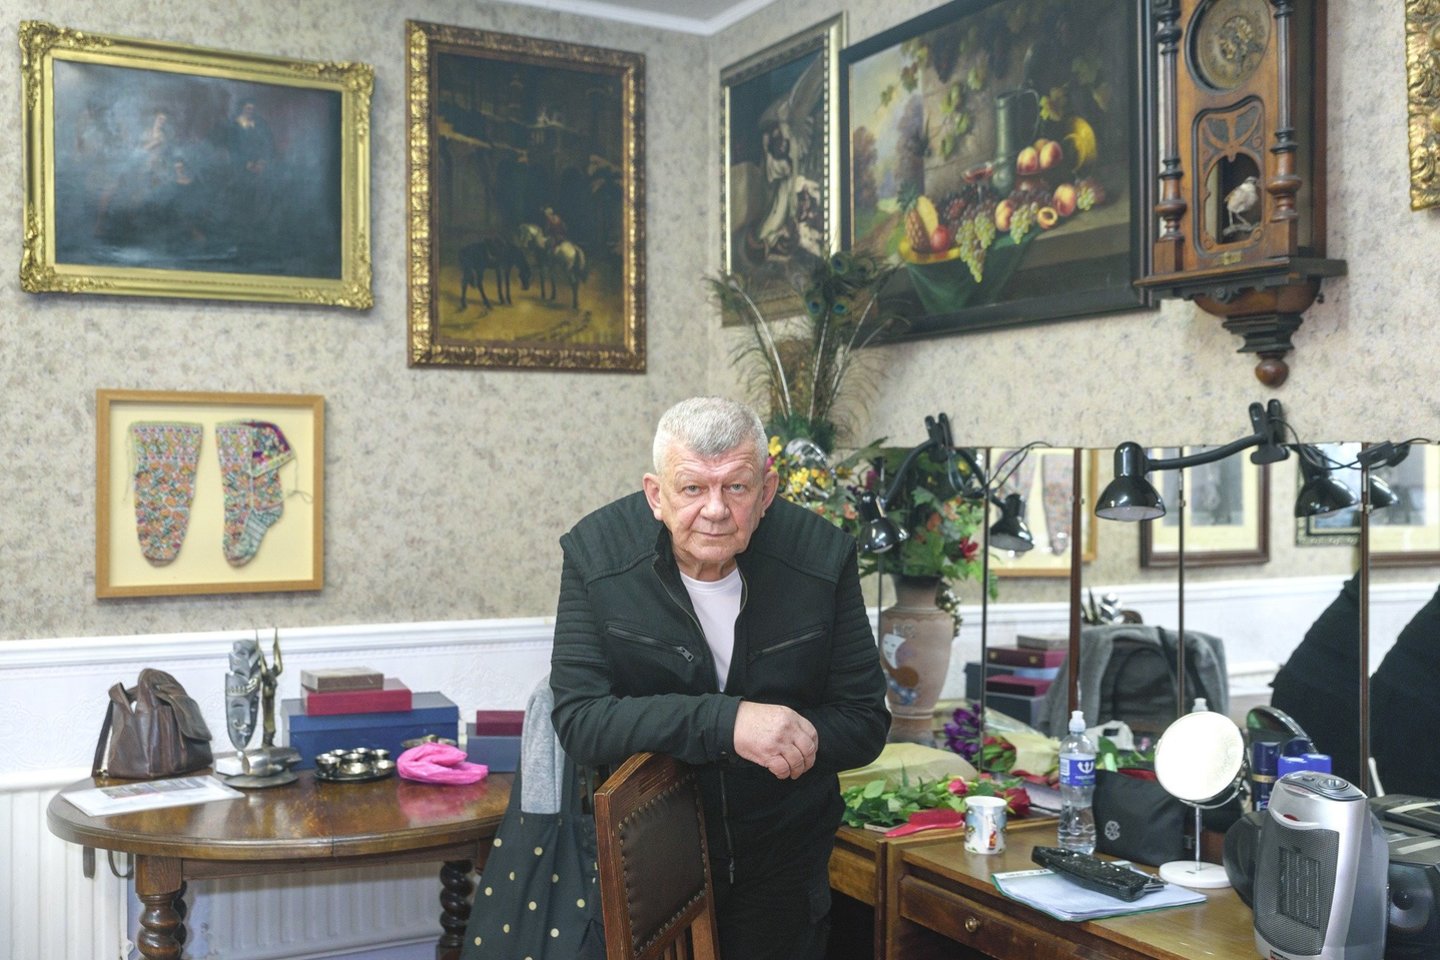 Klaipėdos Pilies teatro režisierius A.Vizgirda sukaupė turtingą paveikslų kolekciją, daug jų yra padovanojęs.<br>A.Kubaičio nuotr.